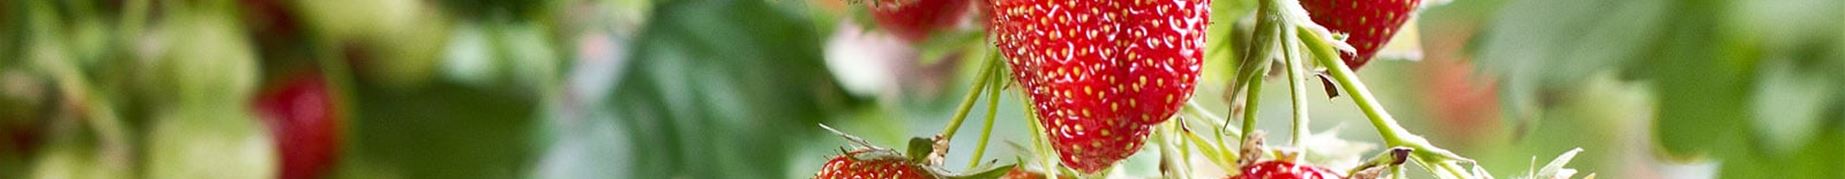 43_erdbeeren-pflanzen-online-kaufen.jpg